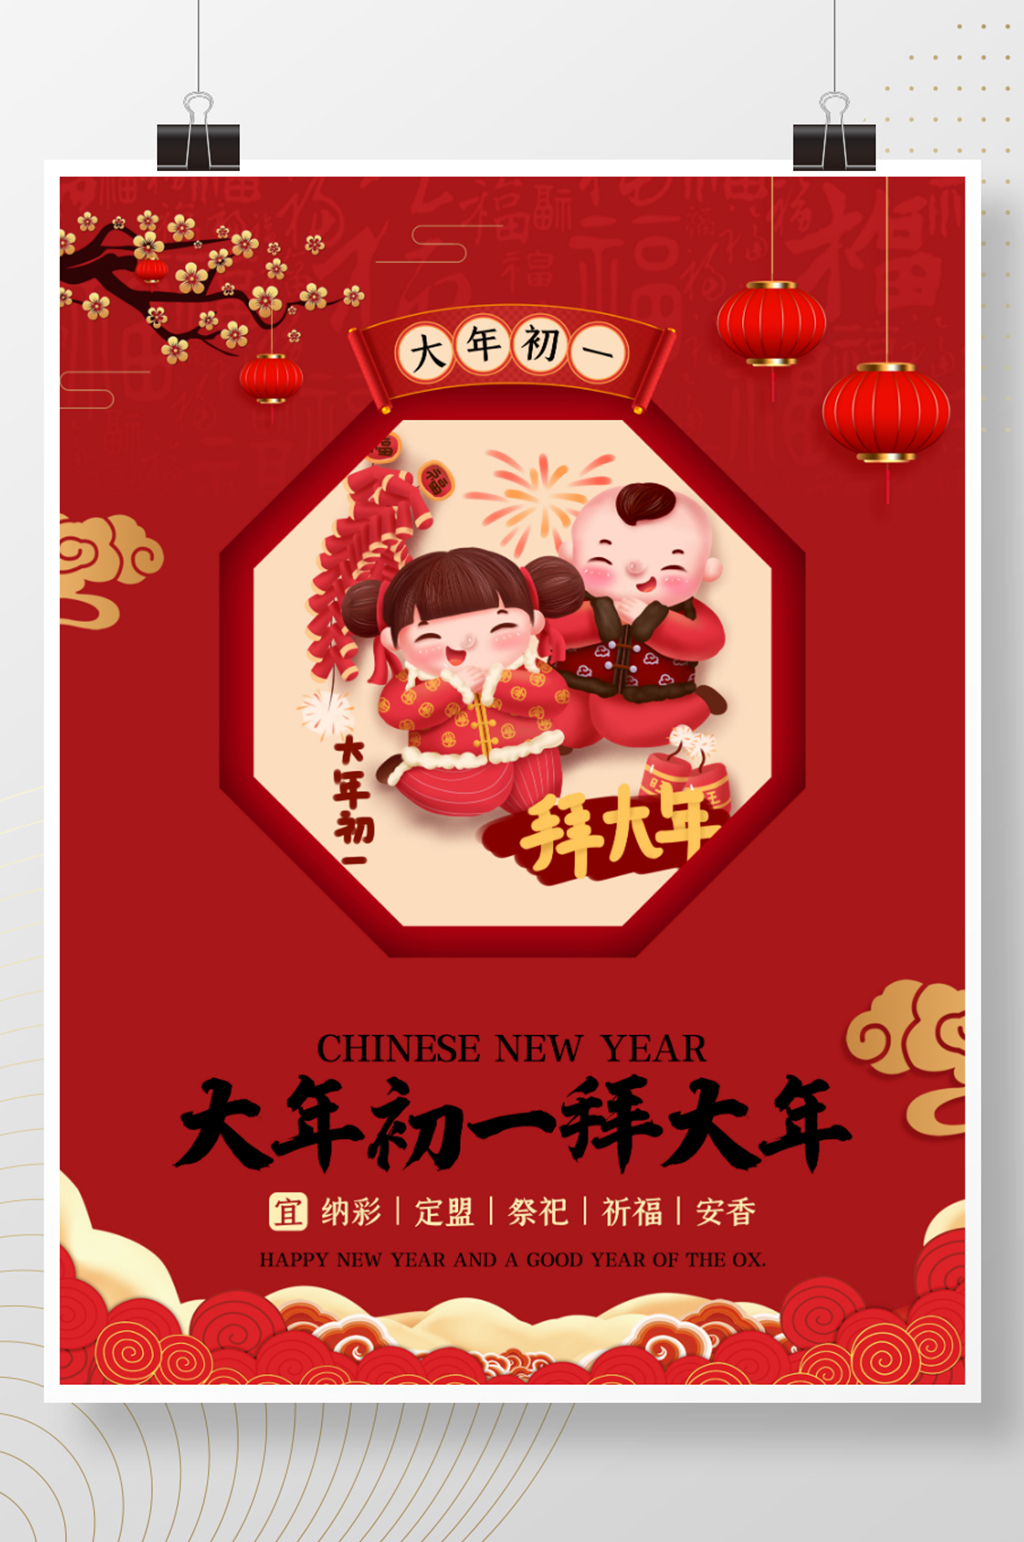 新年正月初一至初七春节习俗海报(初一)